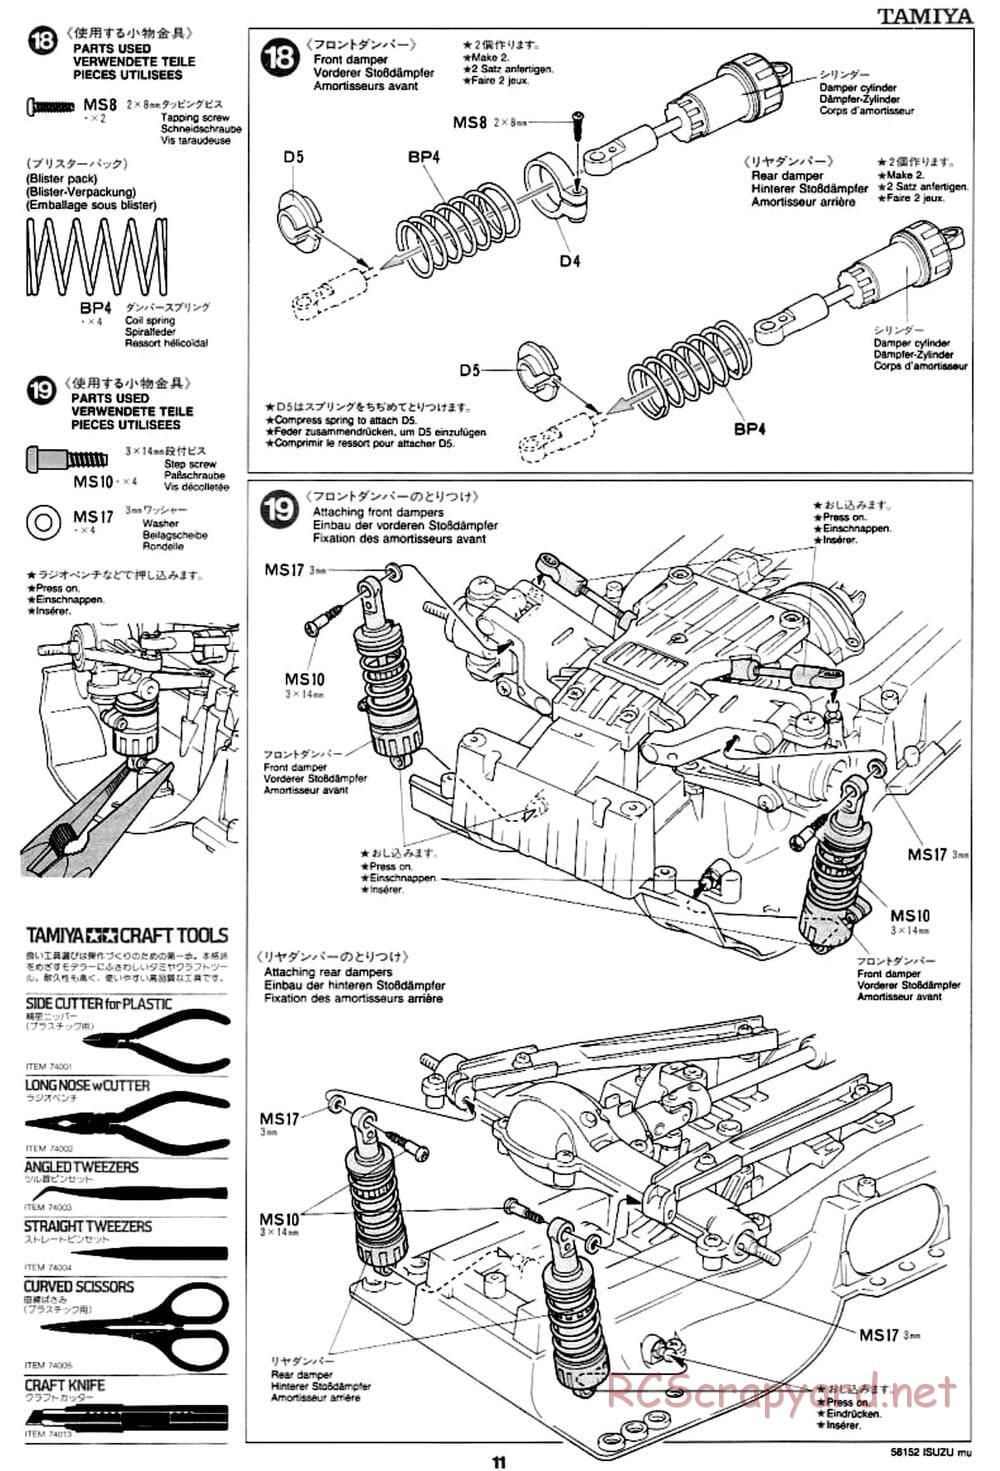 Tamiya - Isuzu Mu - CC-01 Chassis - Manual - Page 11